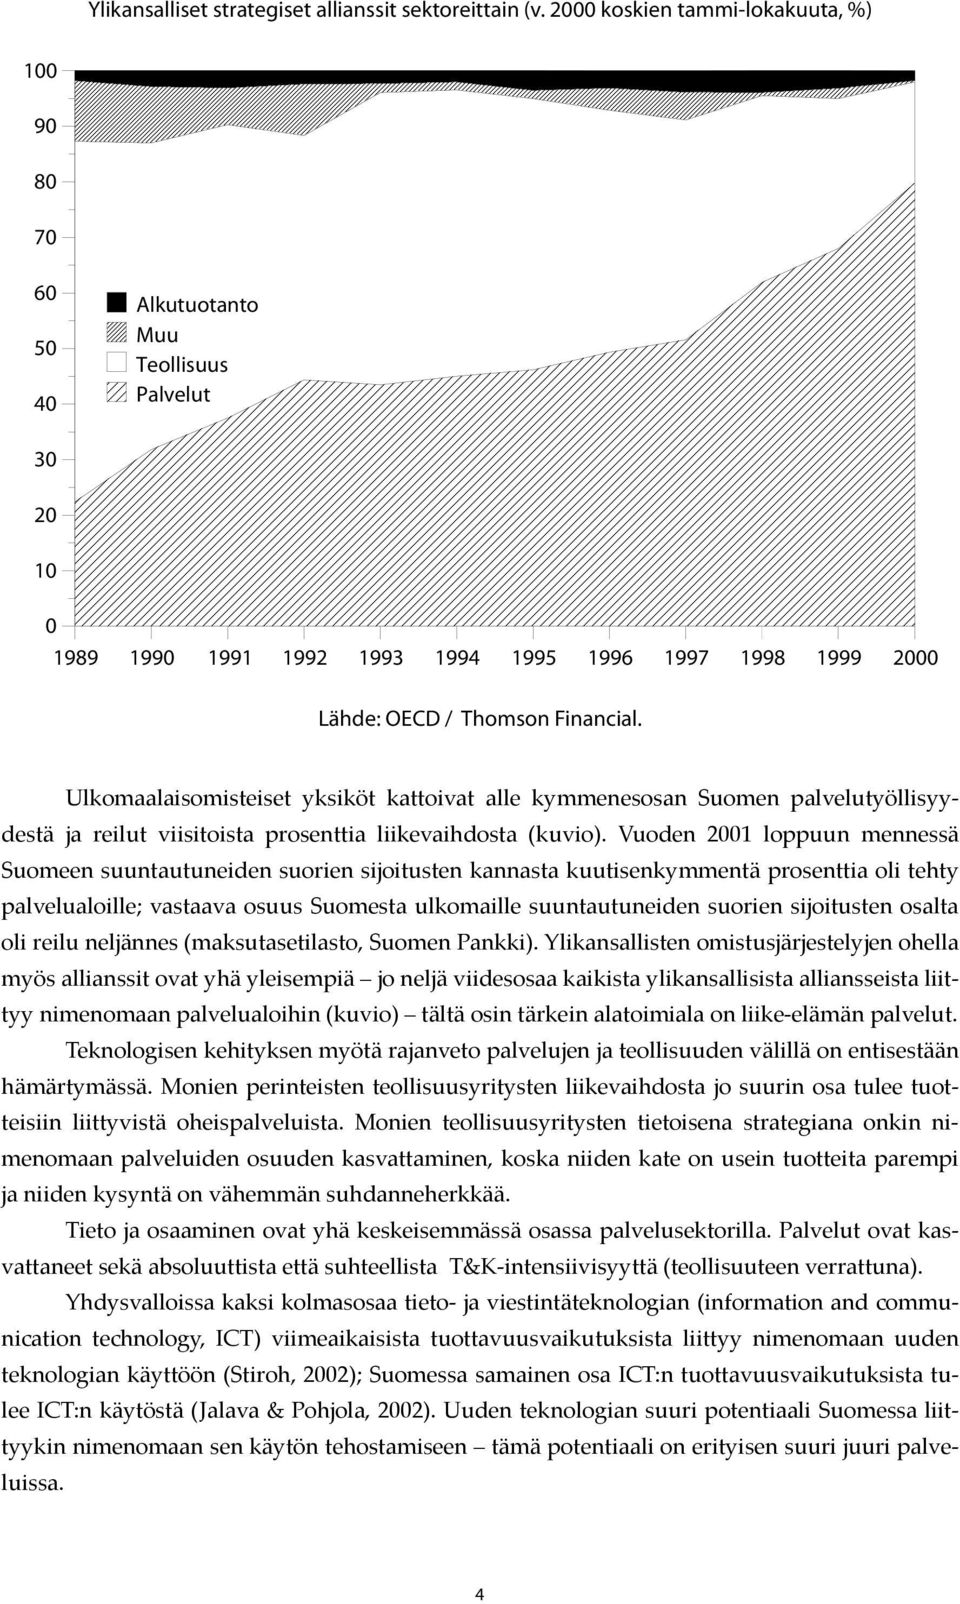 Ulkomaalaisomisteiset yksiköt kattoivat alle kymmenesosan Suomen palvelutyöllisyydestä ja reilut viisitoista prosenttia liikevaihdosta (kuvio).